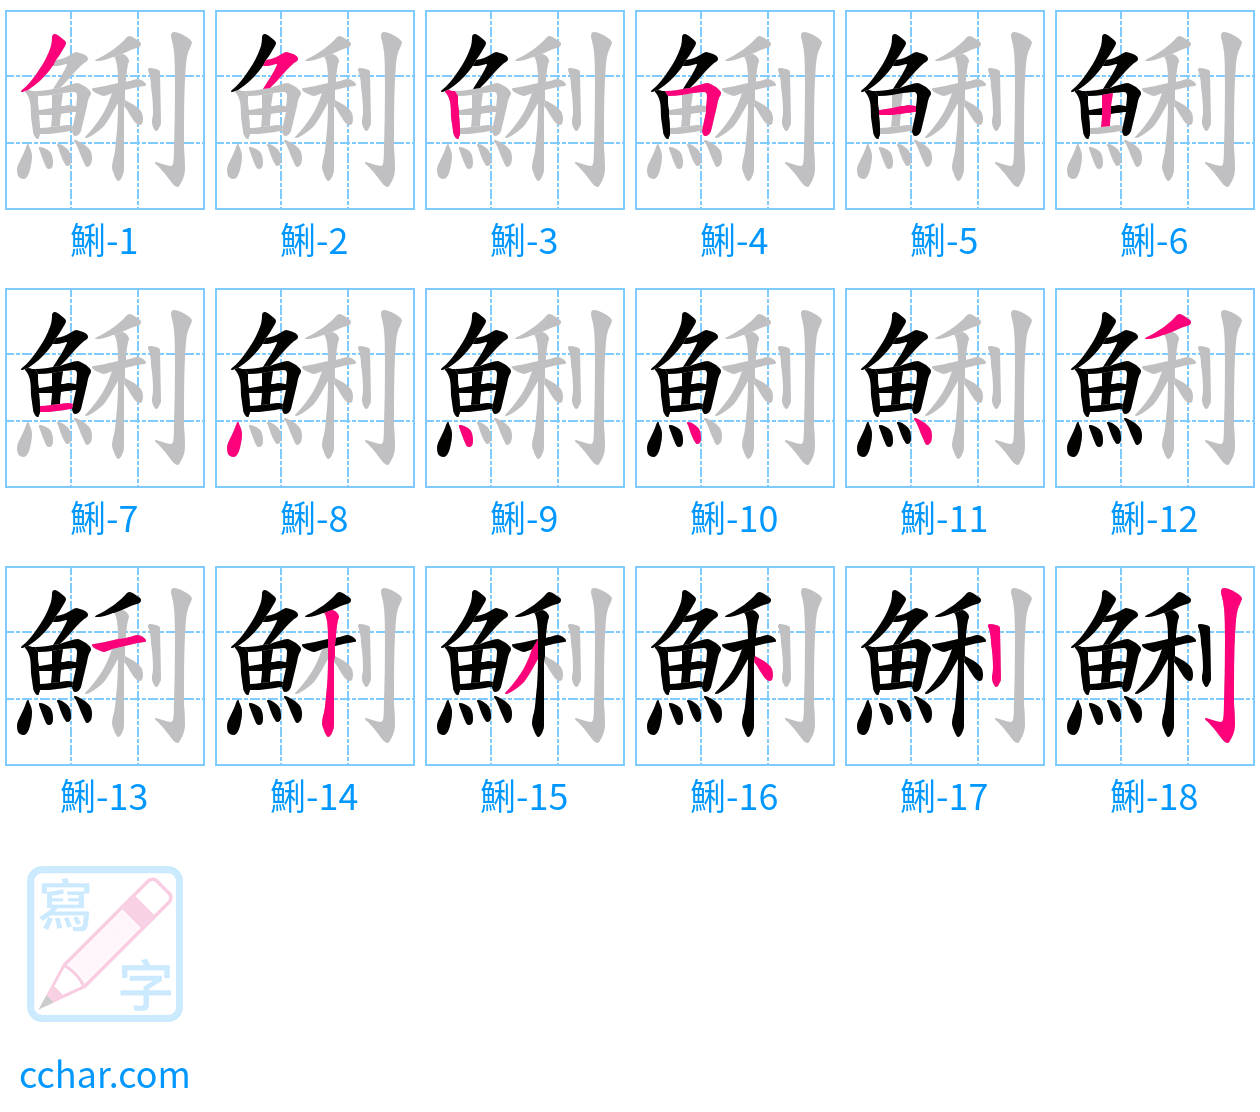 鯏 stroke order step-by-step diagram